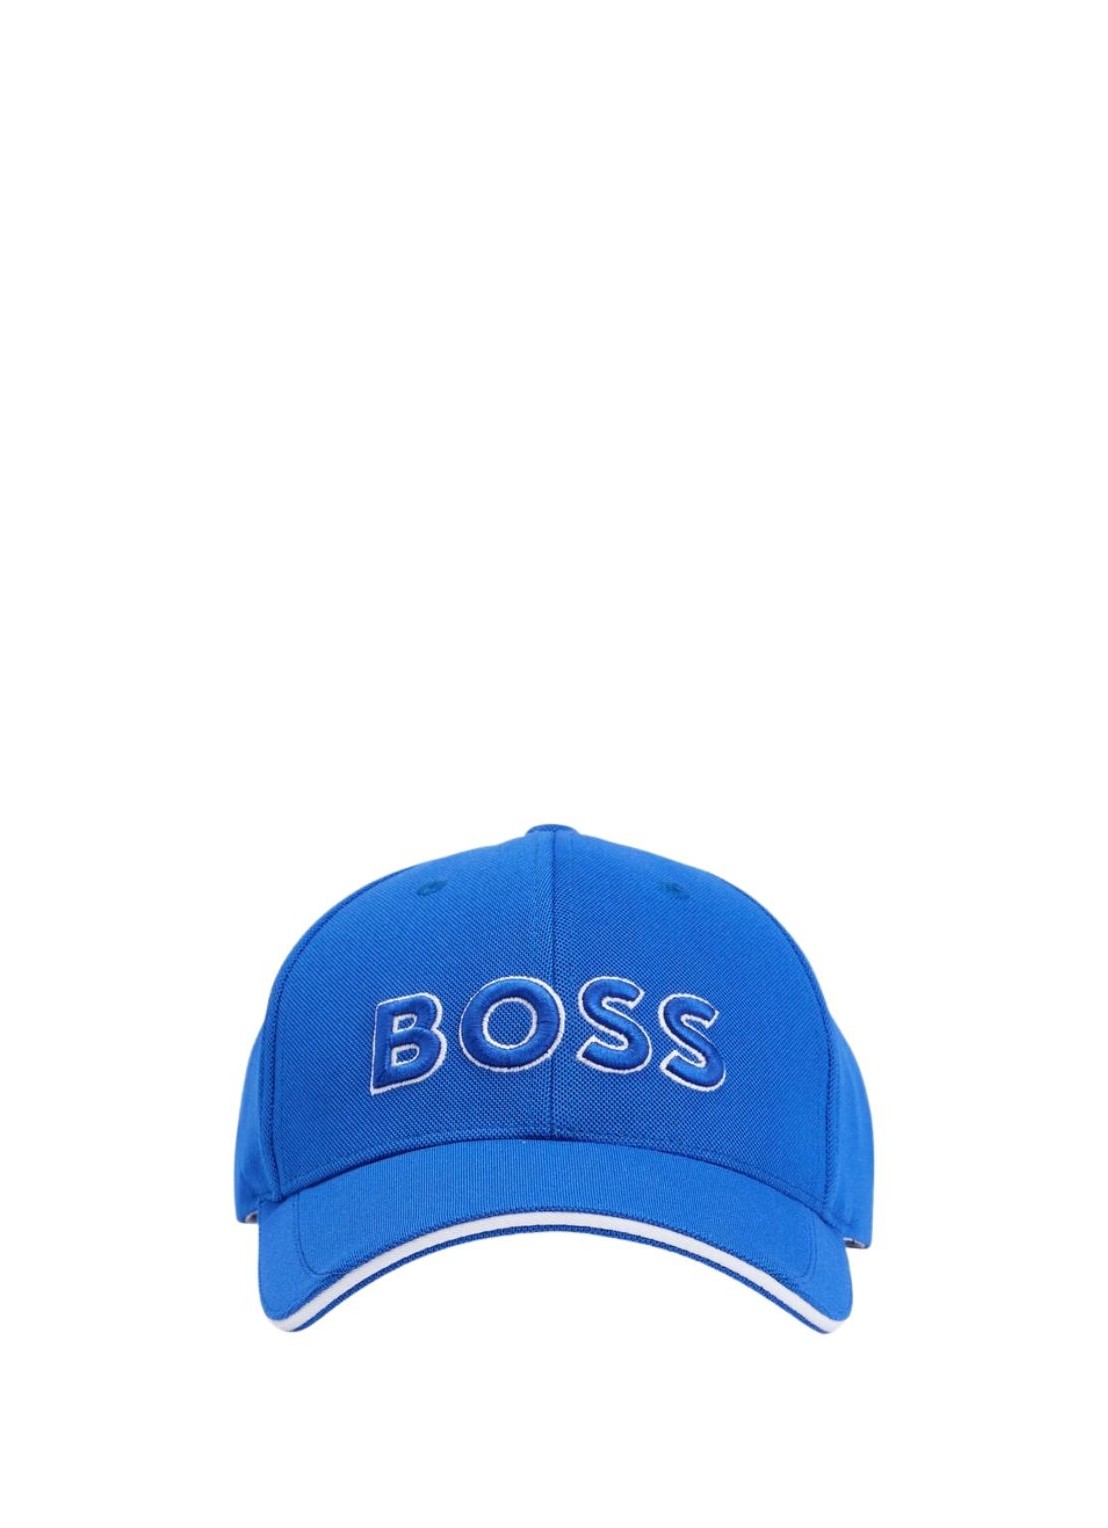 boss cap-us-1 50496291 438 - T/U Talla